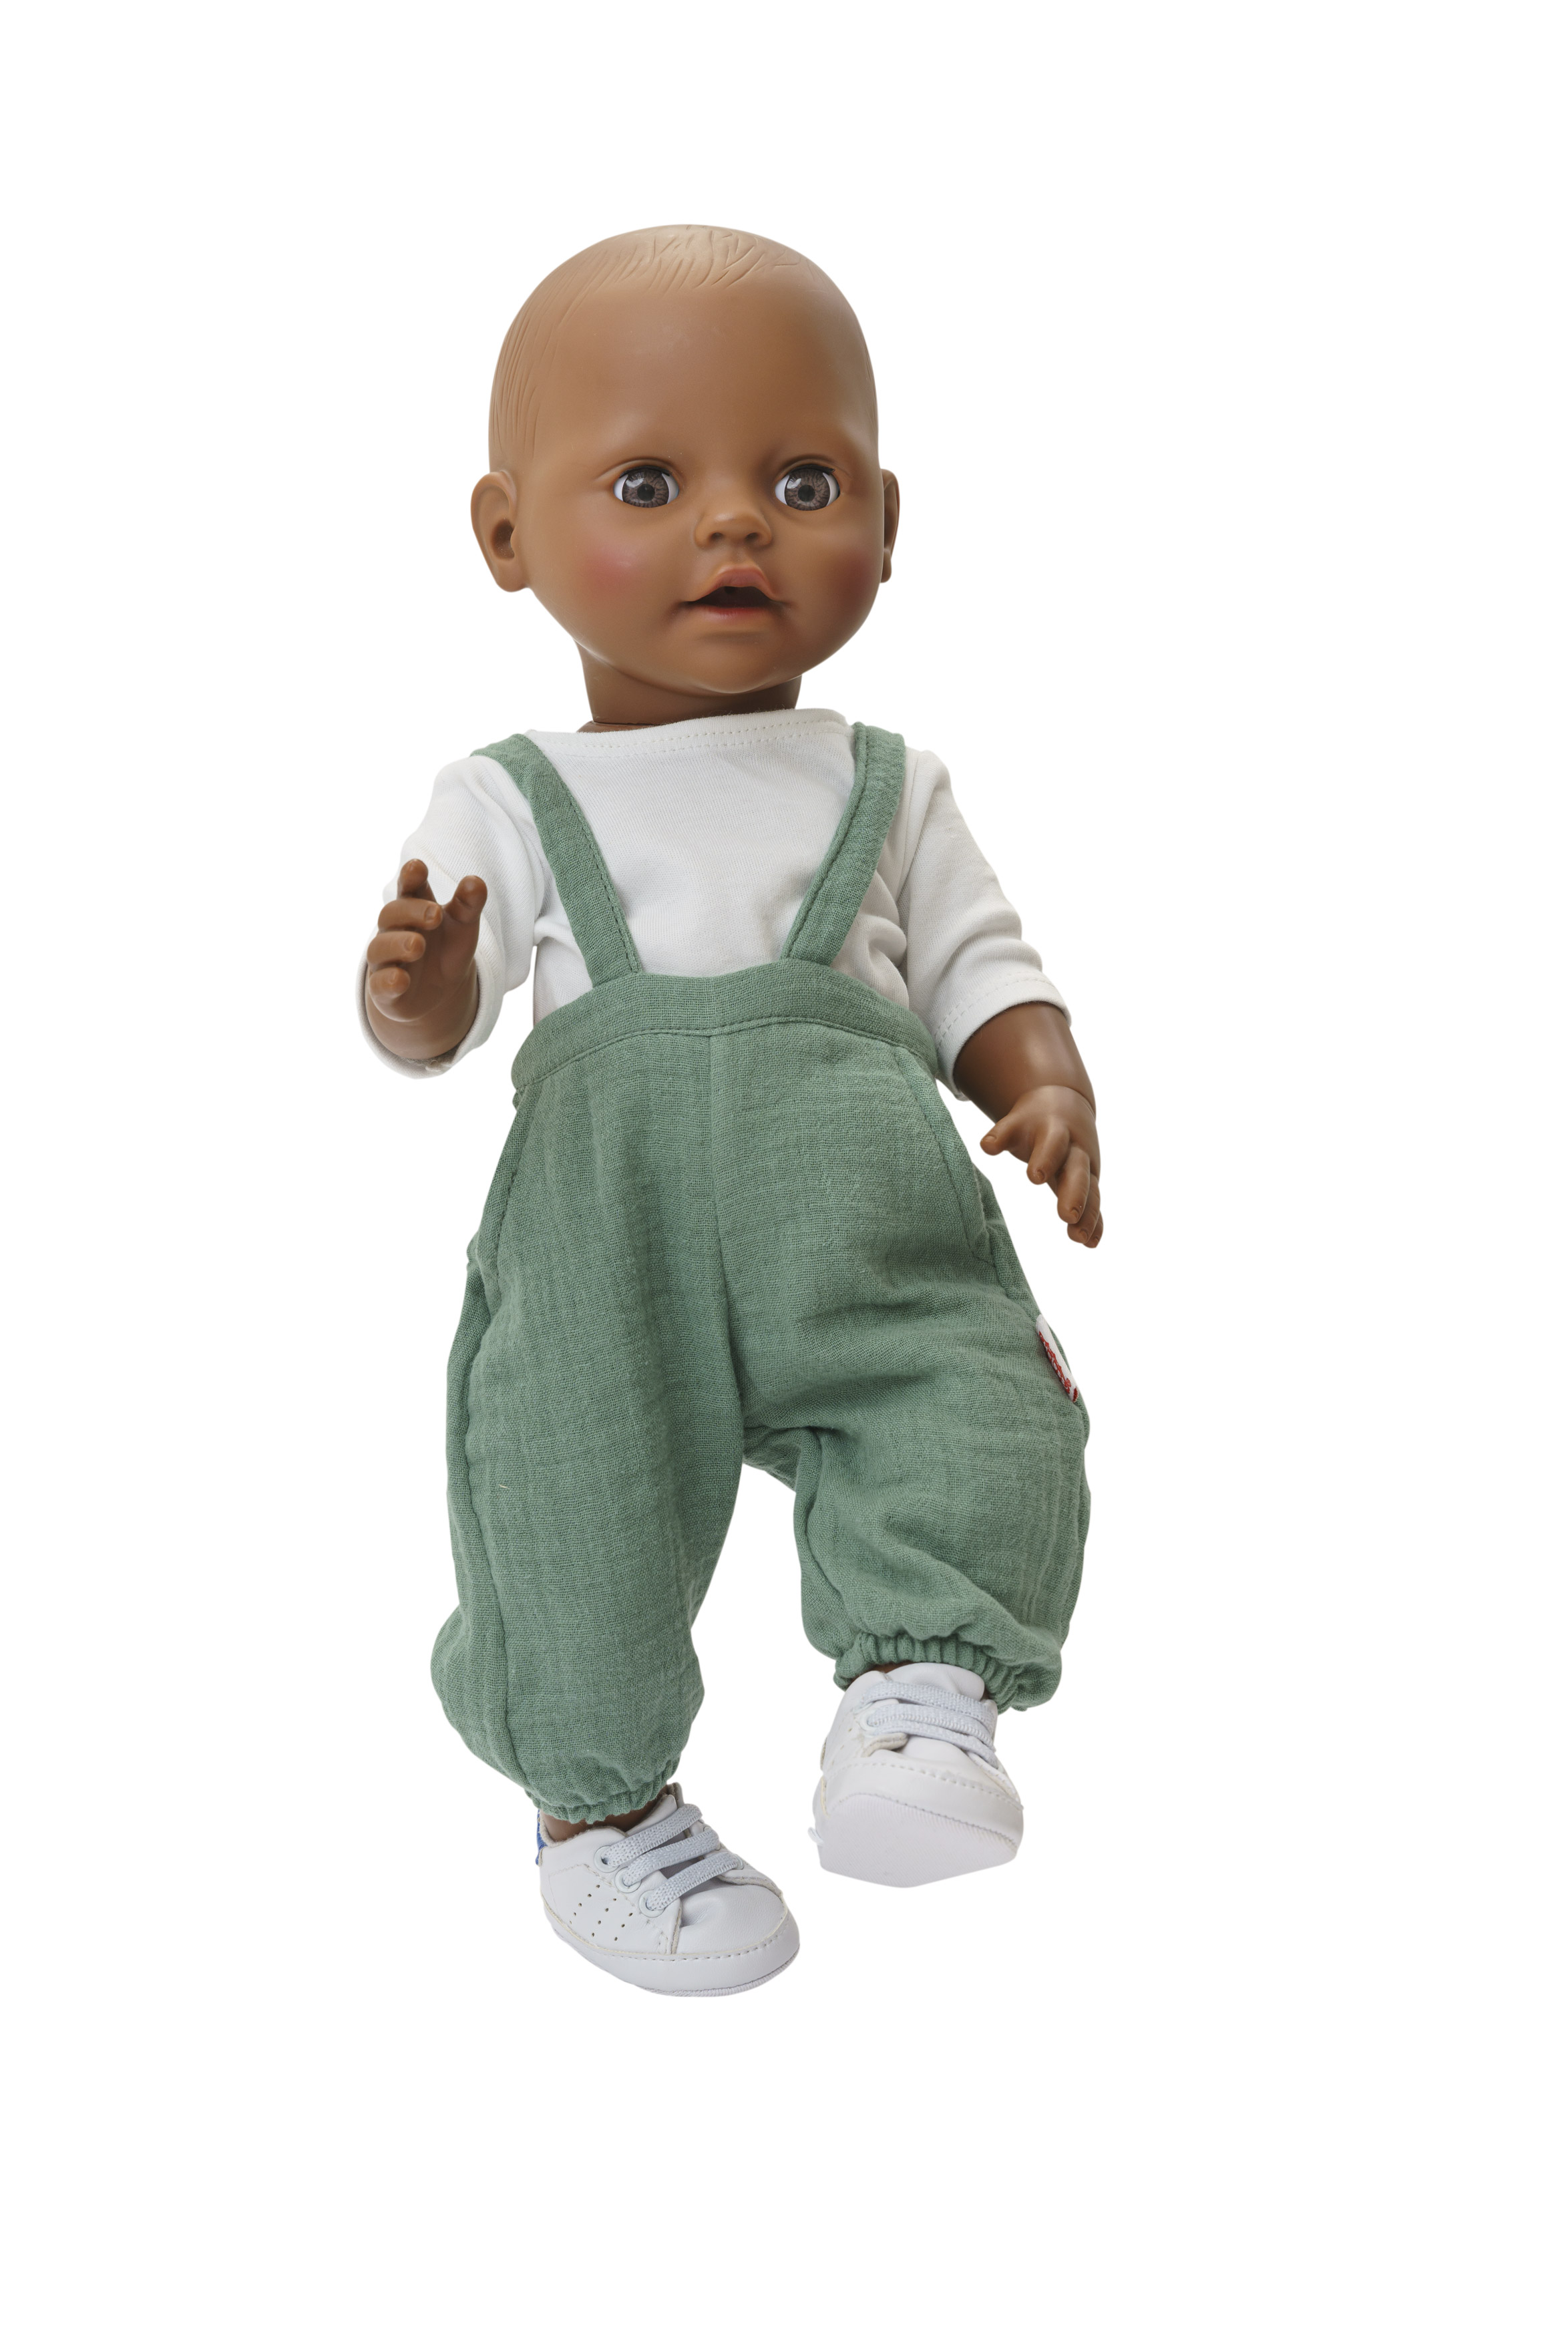 Puppen-Latzhose aus 100 % Bio-Baumwolle, salbeigrün, mit weißem T-Shirt, 2-teilig, Gr. 28-35 cm